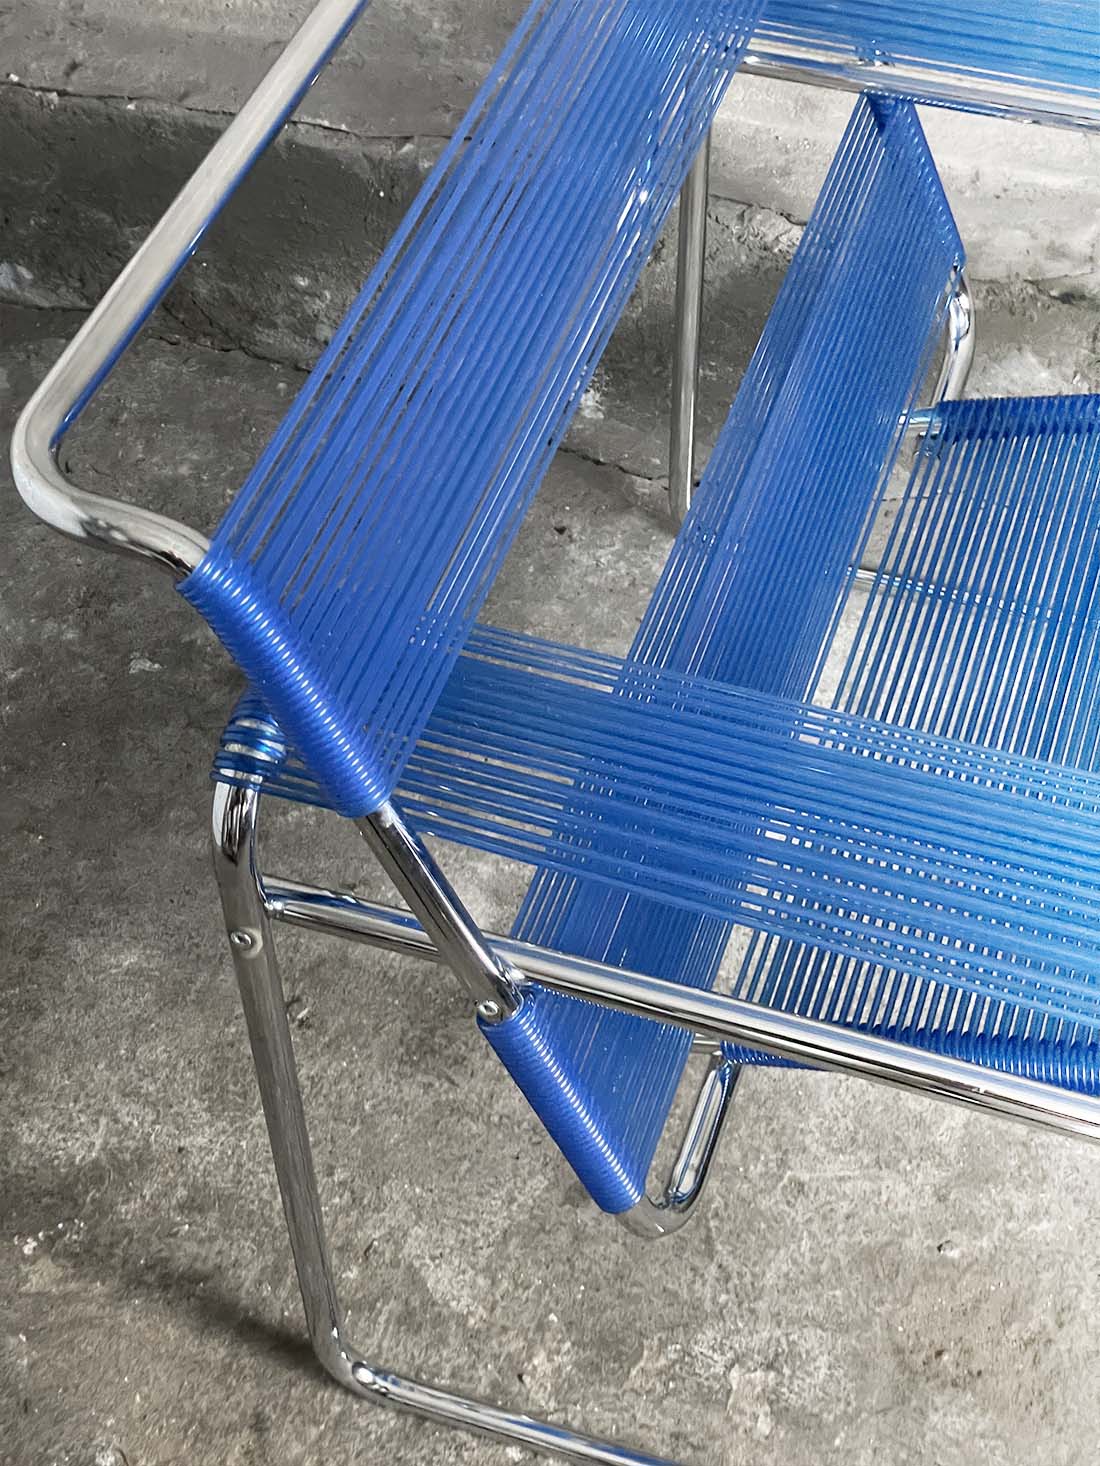 Wasilly breuer fotel spaghetti italian krzeslarz niebieski vintage detal